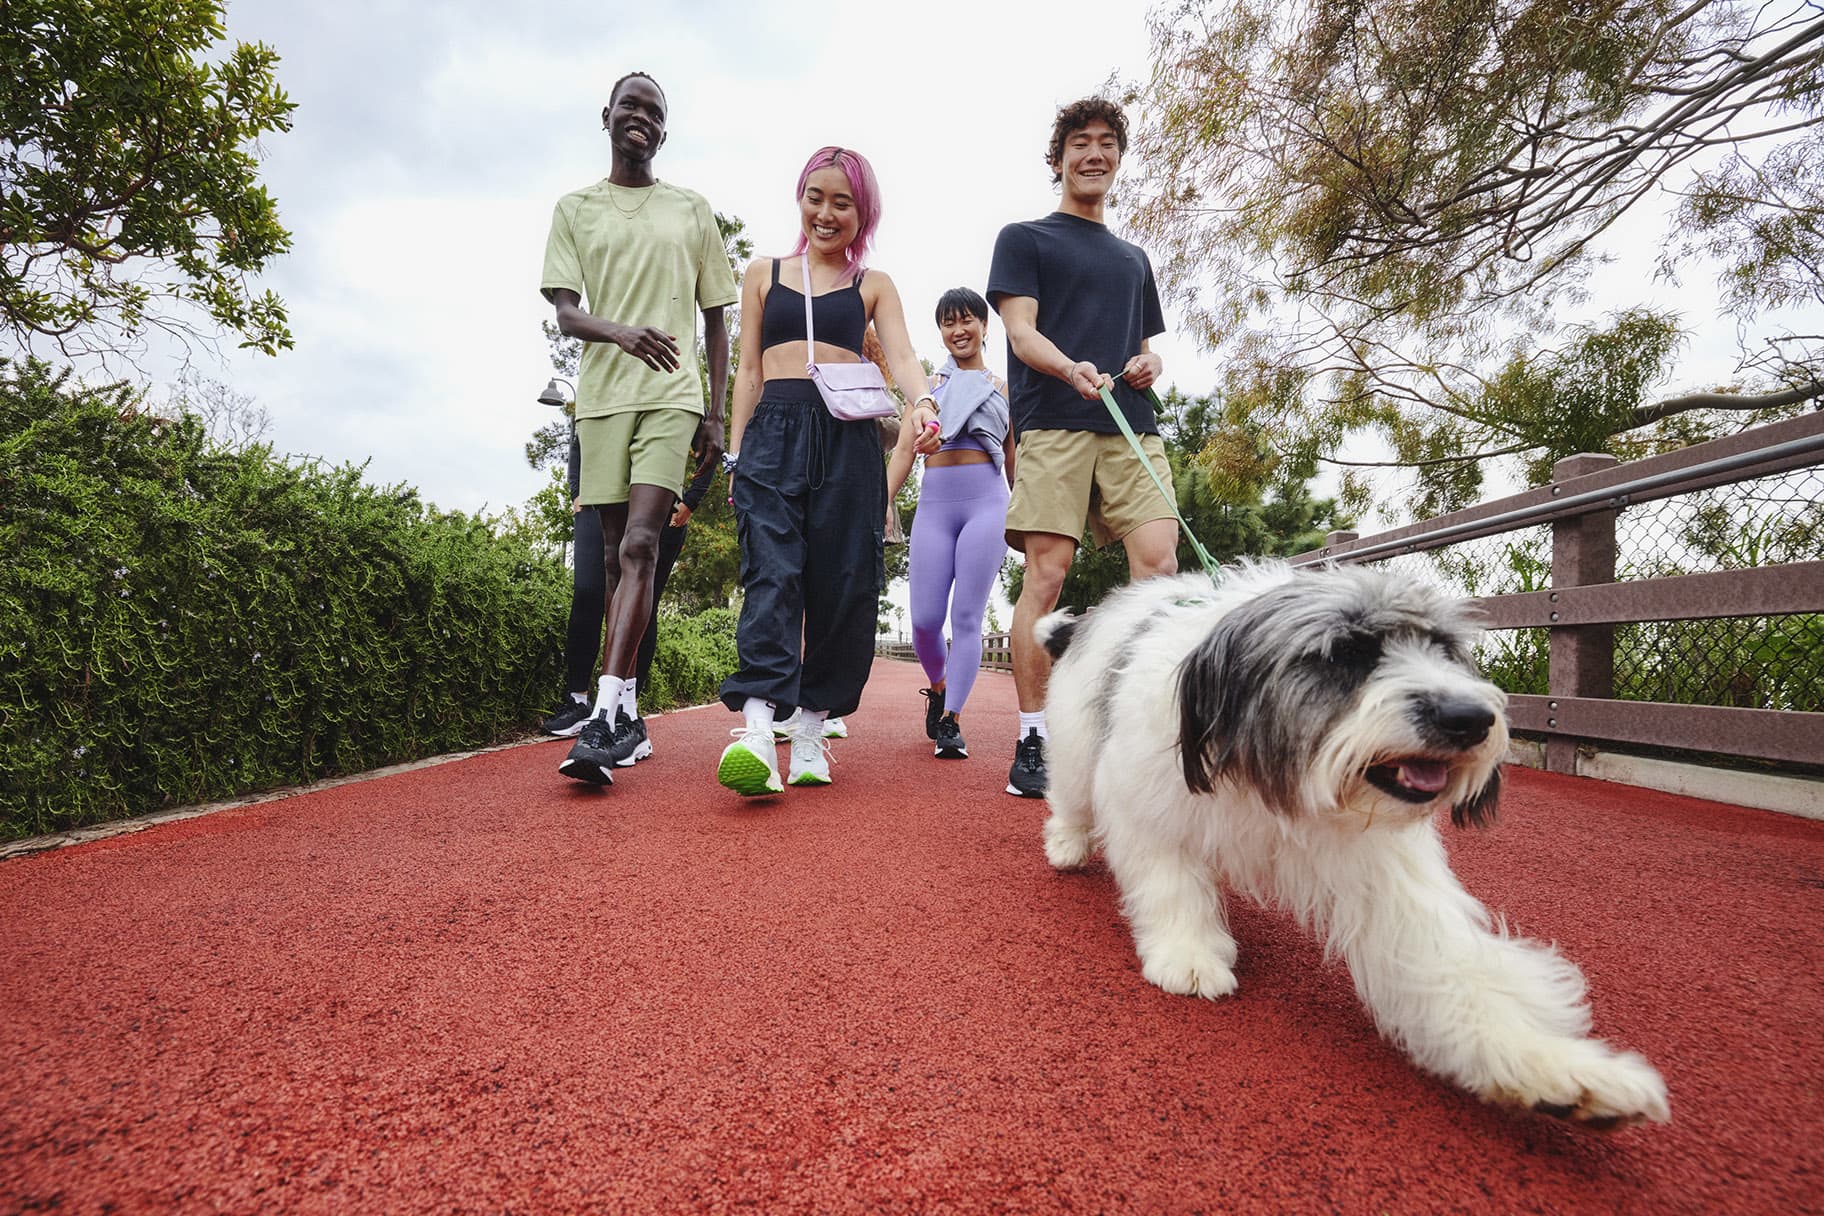 Cinco sorprendentes beneficios de caminar todos los días, según los expertos